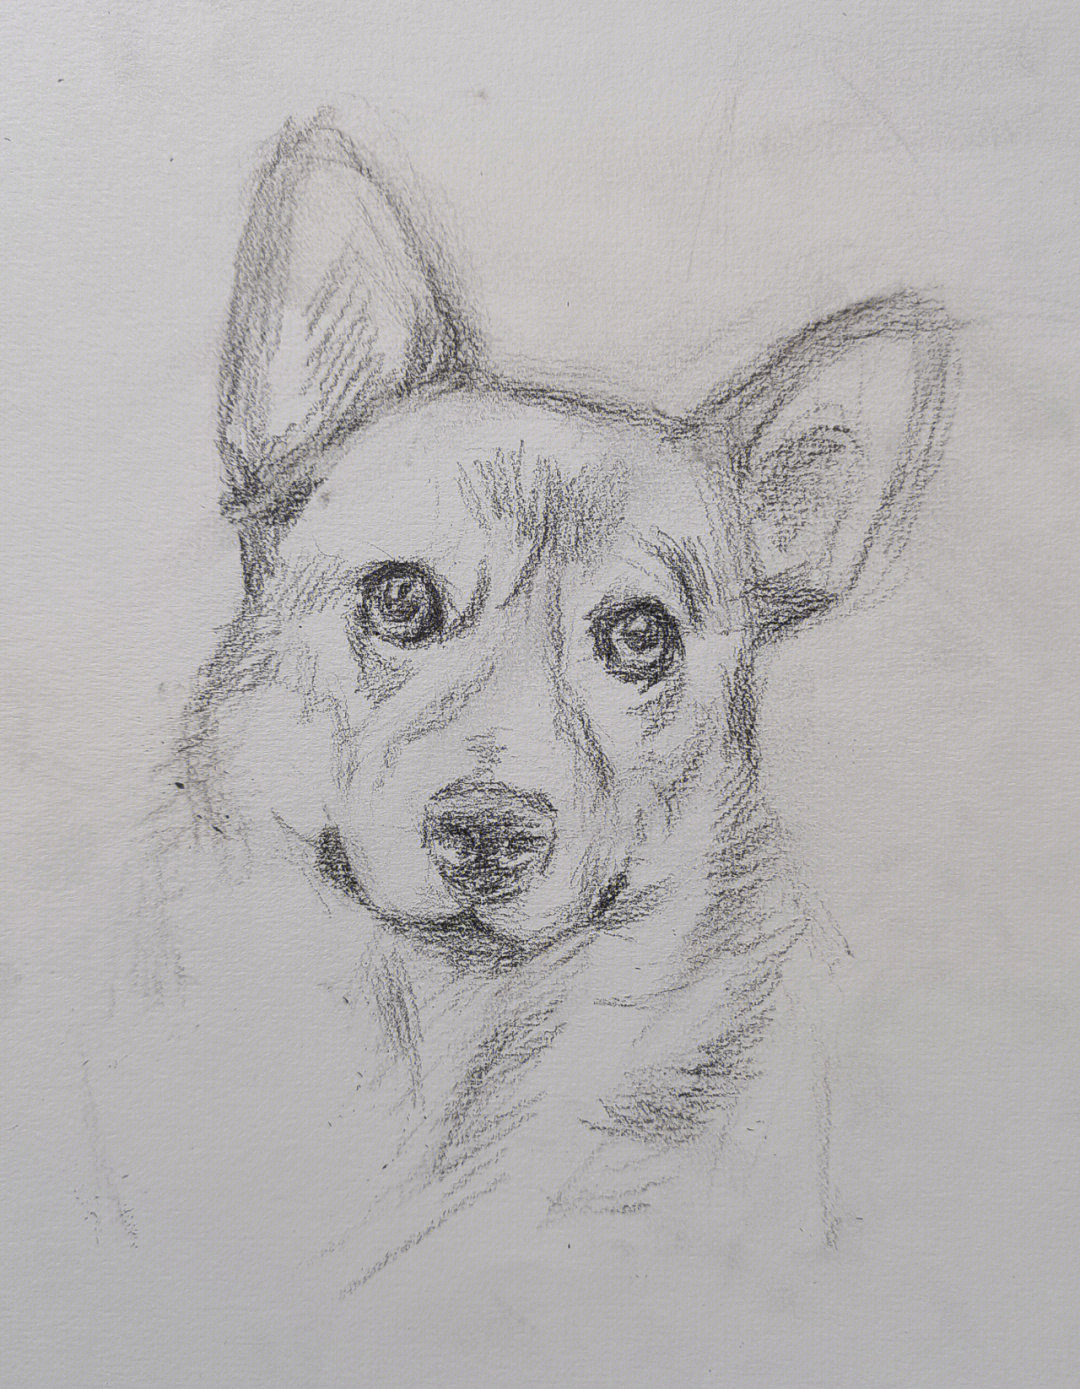 绘画工具:卡西米尔14b  自动铅笔2b第一步:画出狗狗的动态和一些结构